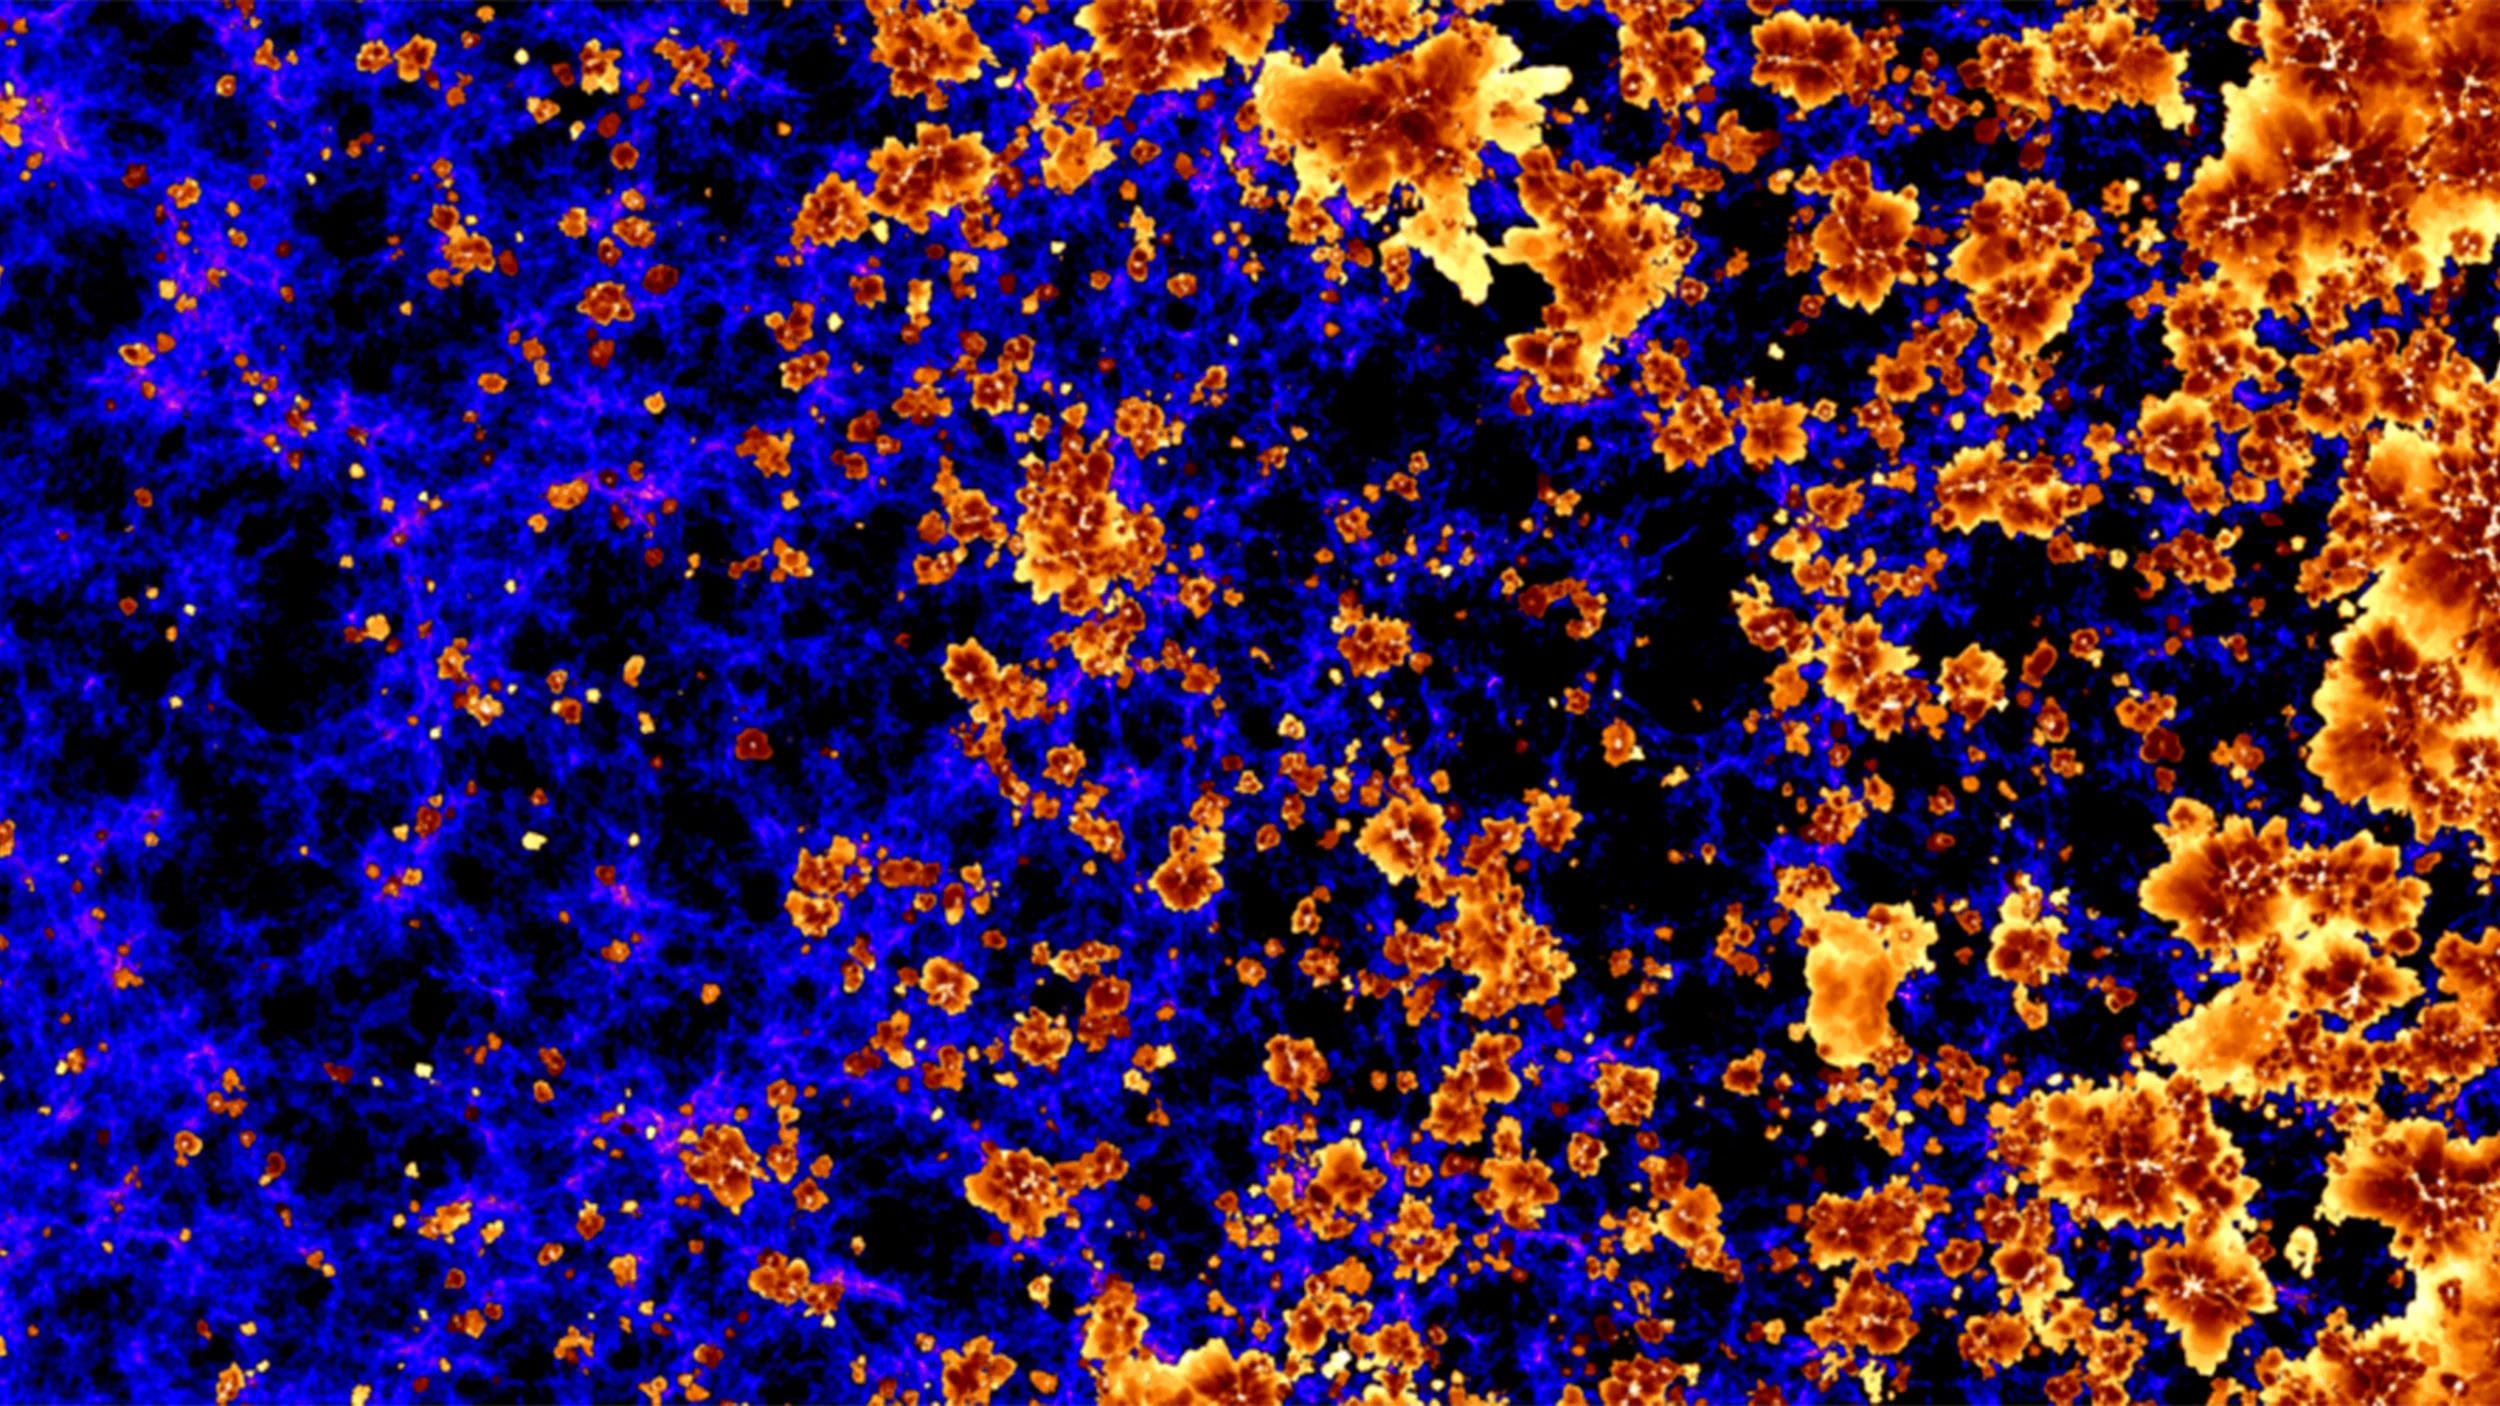 Esta imagen muestra un llamativo patrón azul y naranja sobre un fondo negro, lo que lo hace visible en el universo.